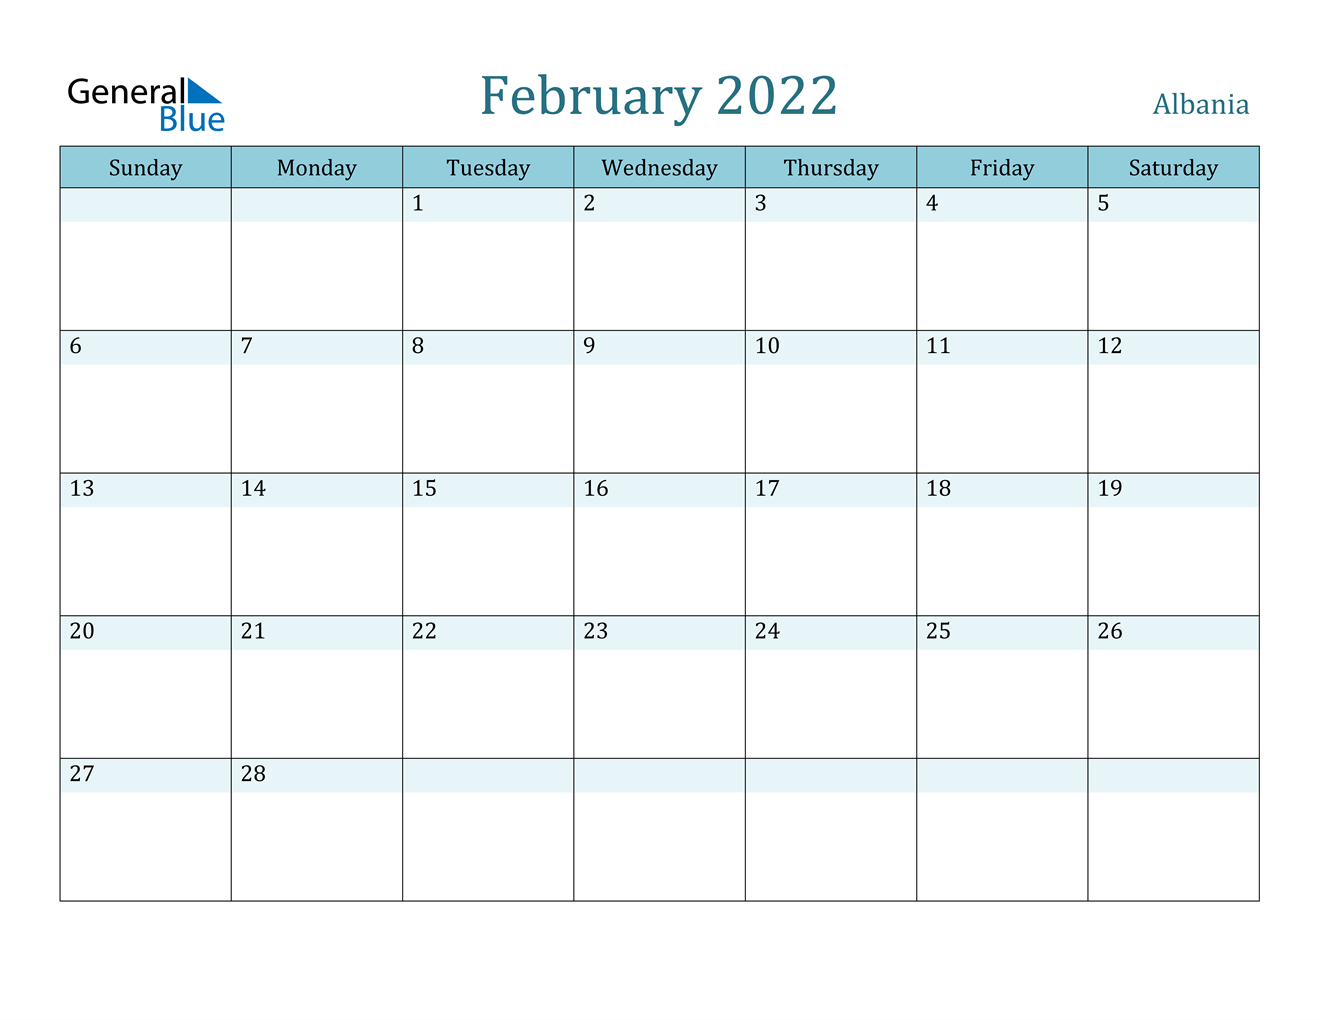 February 2022 Calendar - Albania